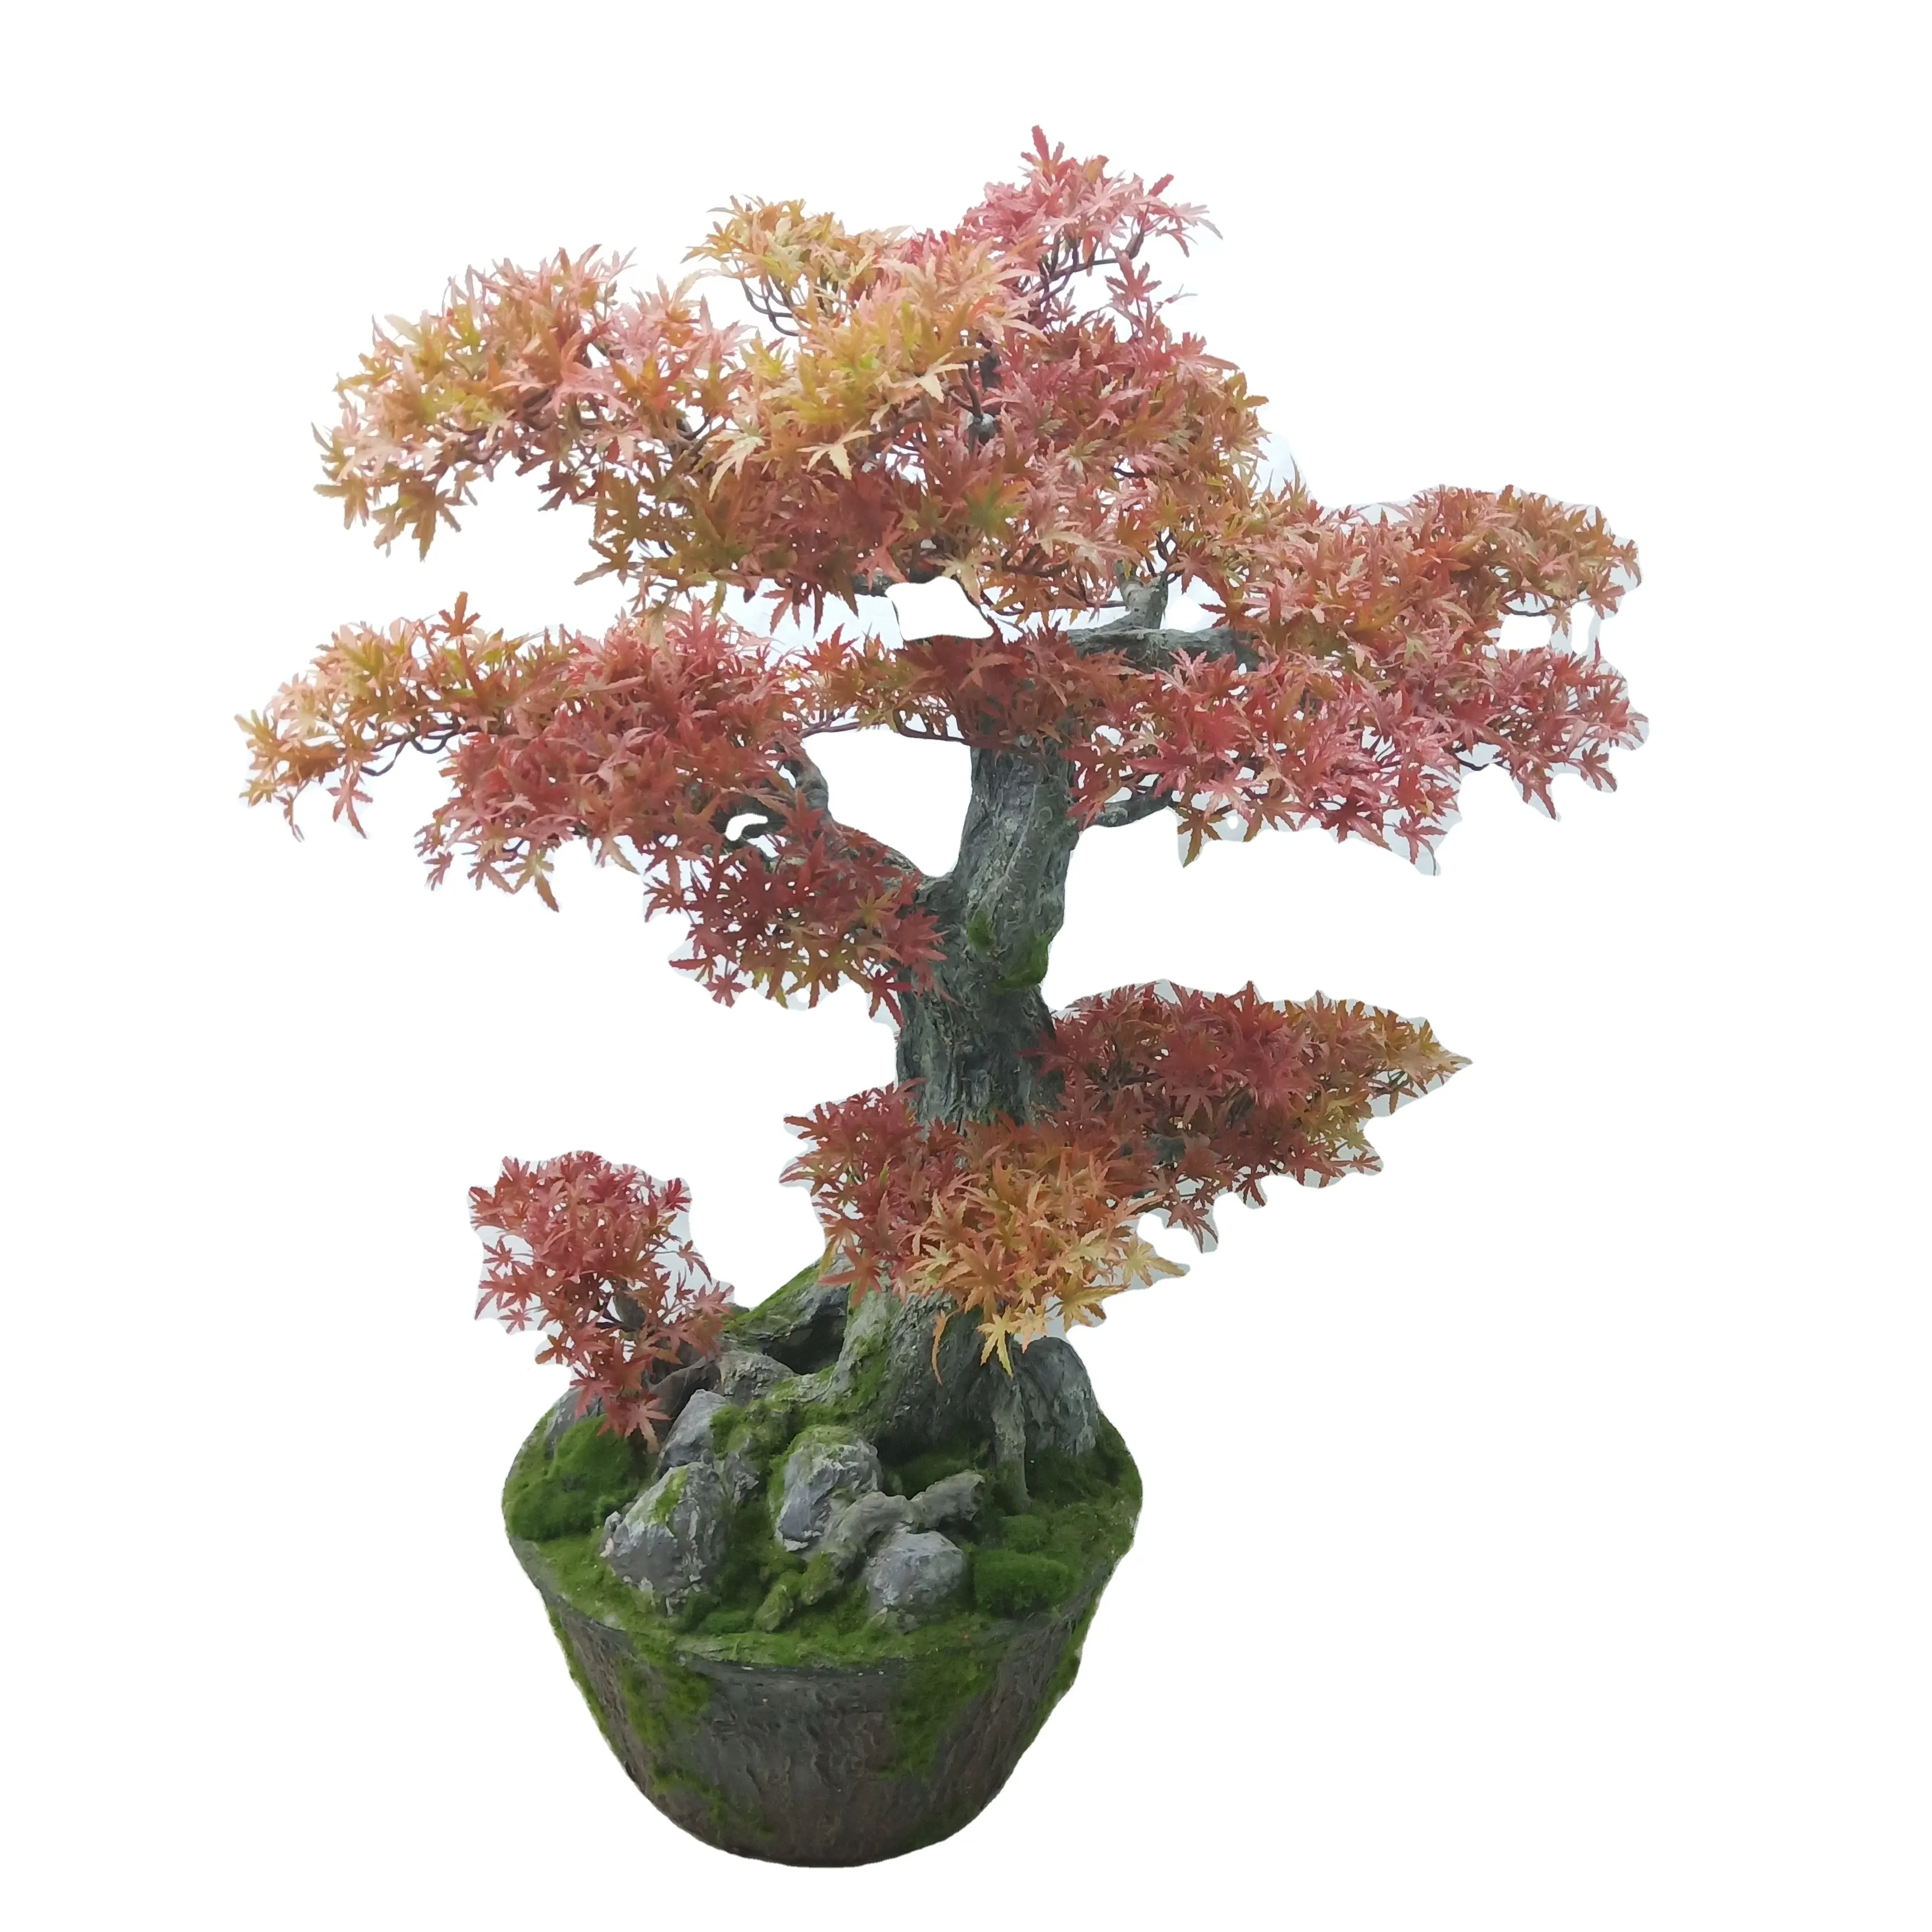 High qualität kunststoff bonsai künstliche pflanzen dekorative ahorn baum